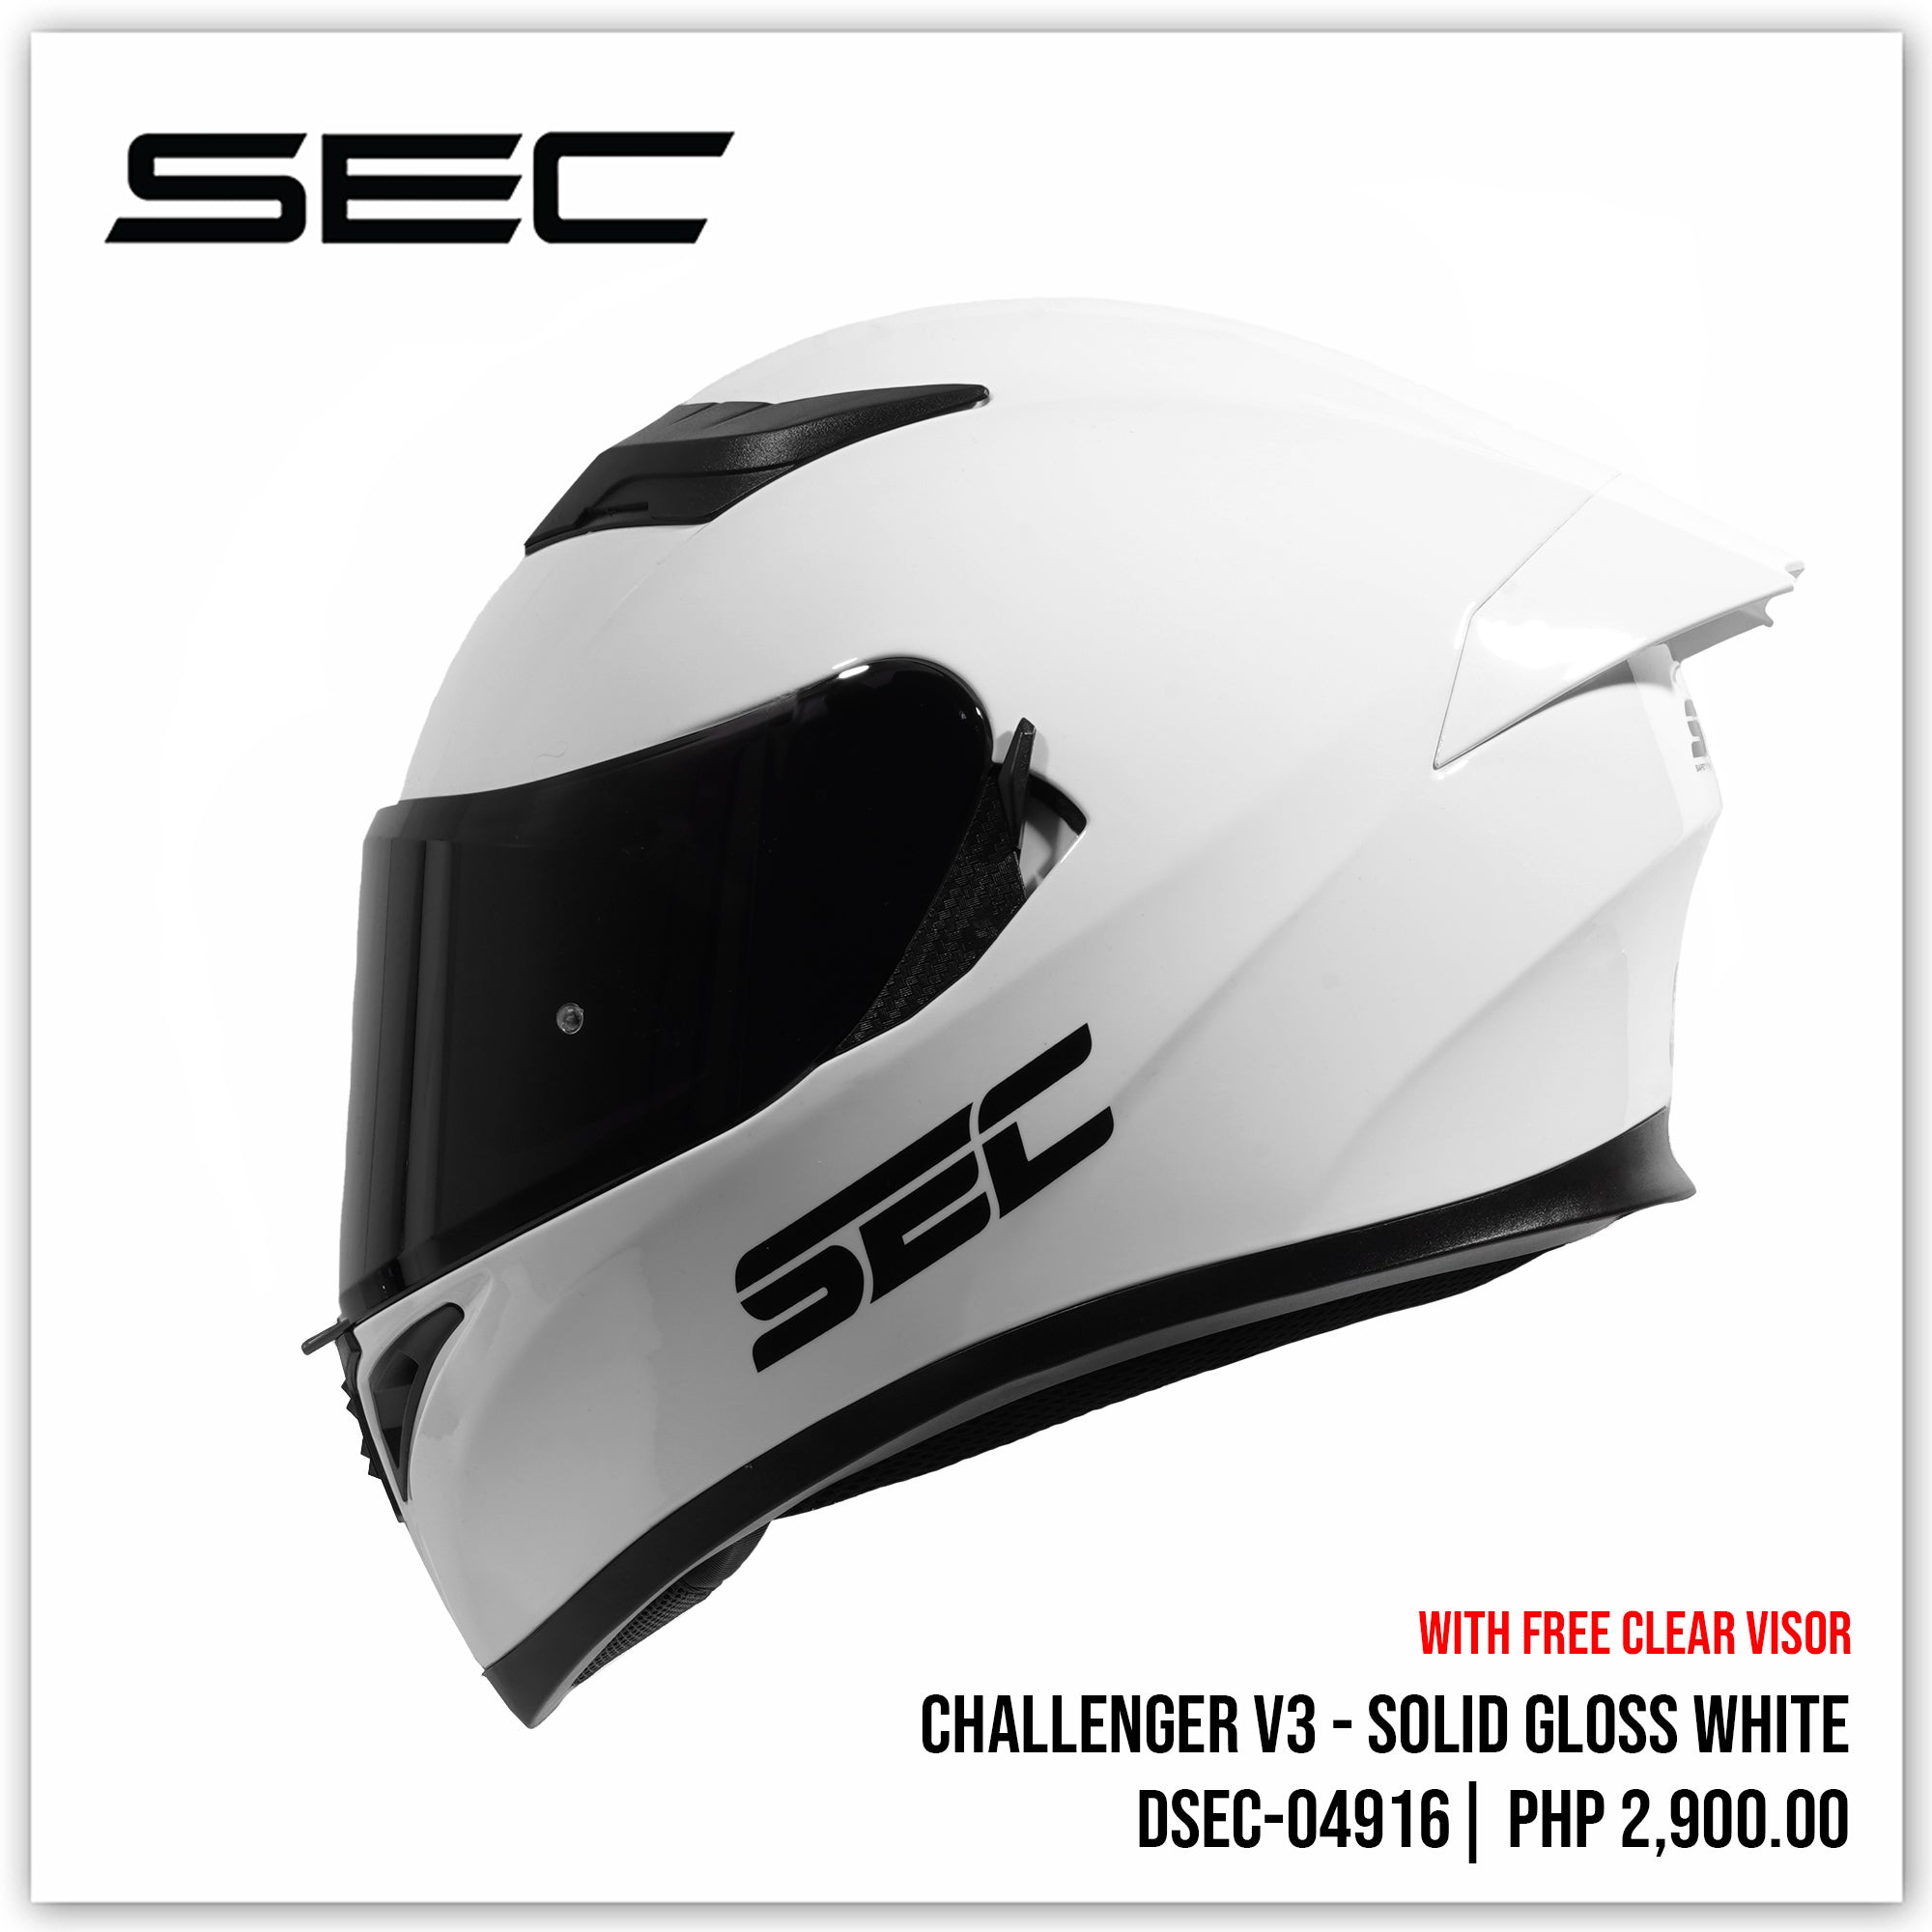 Challenger v3 - Solid Gloss White